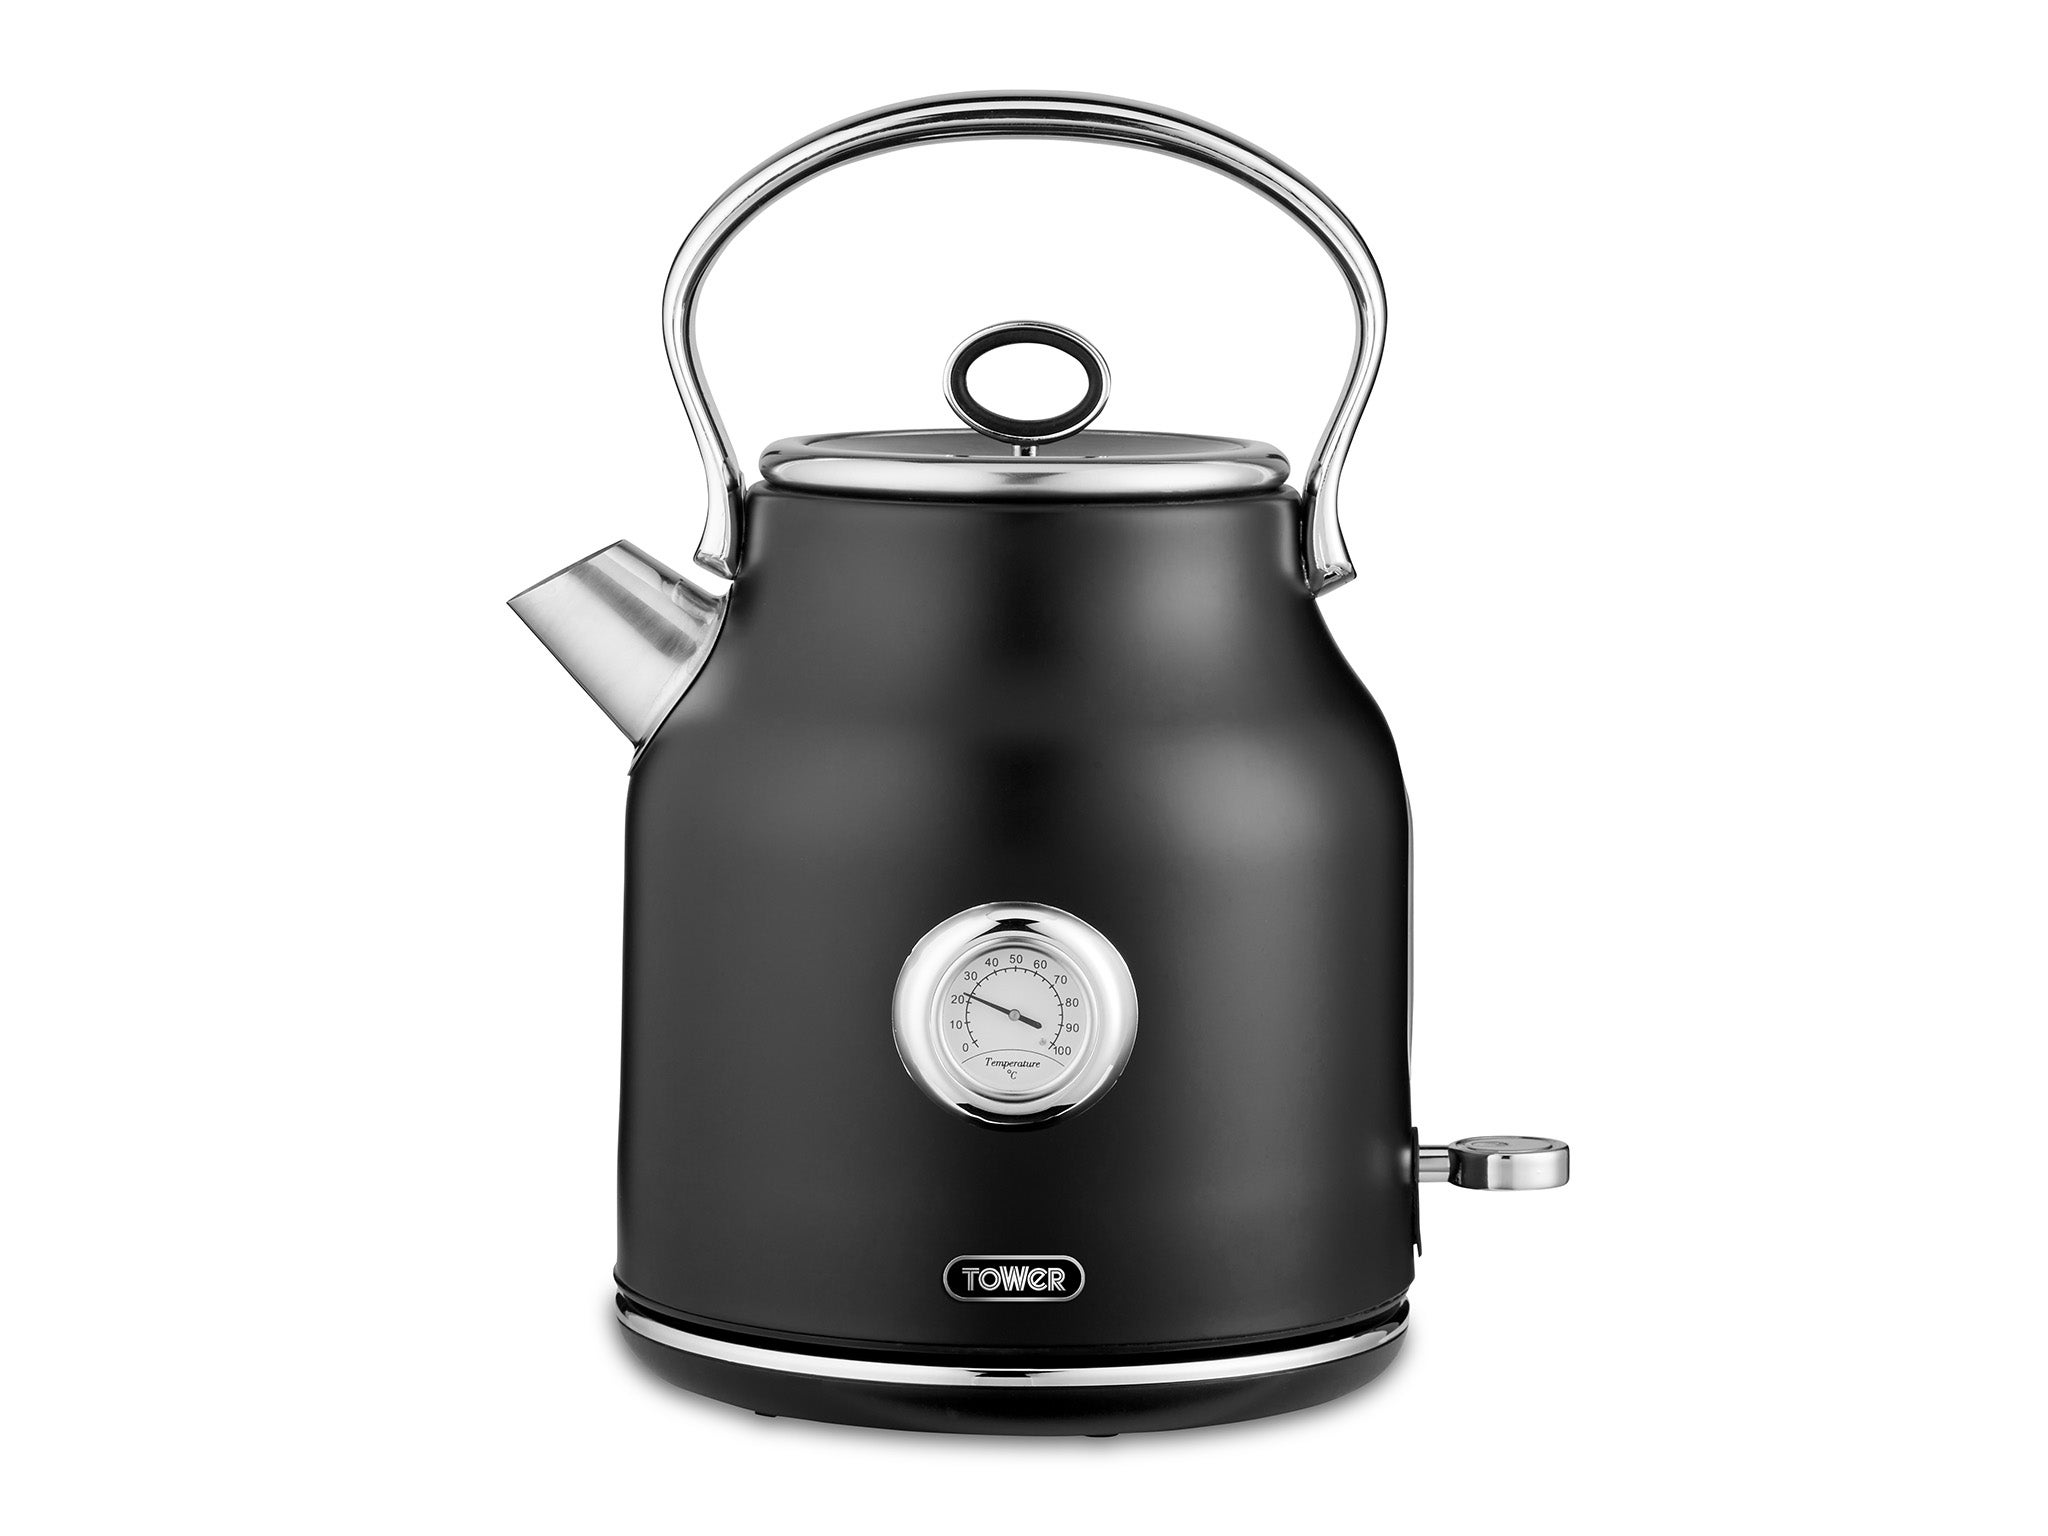 Tower Housewares bottega stainless steel kettle